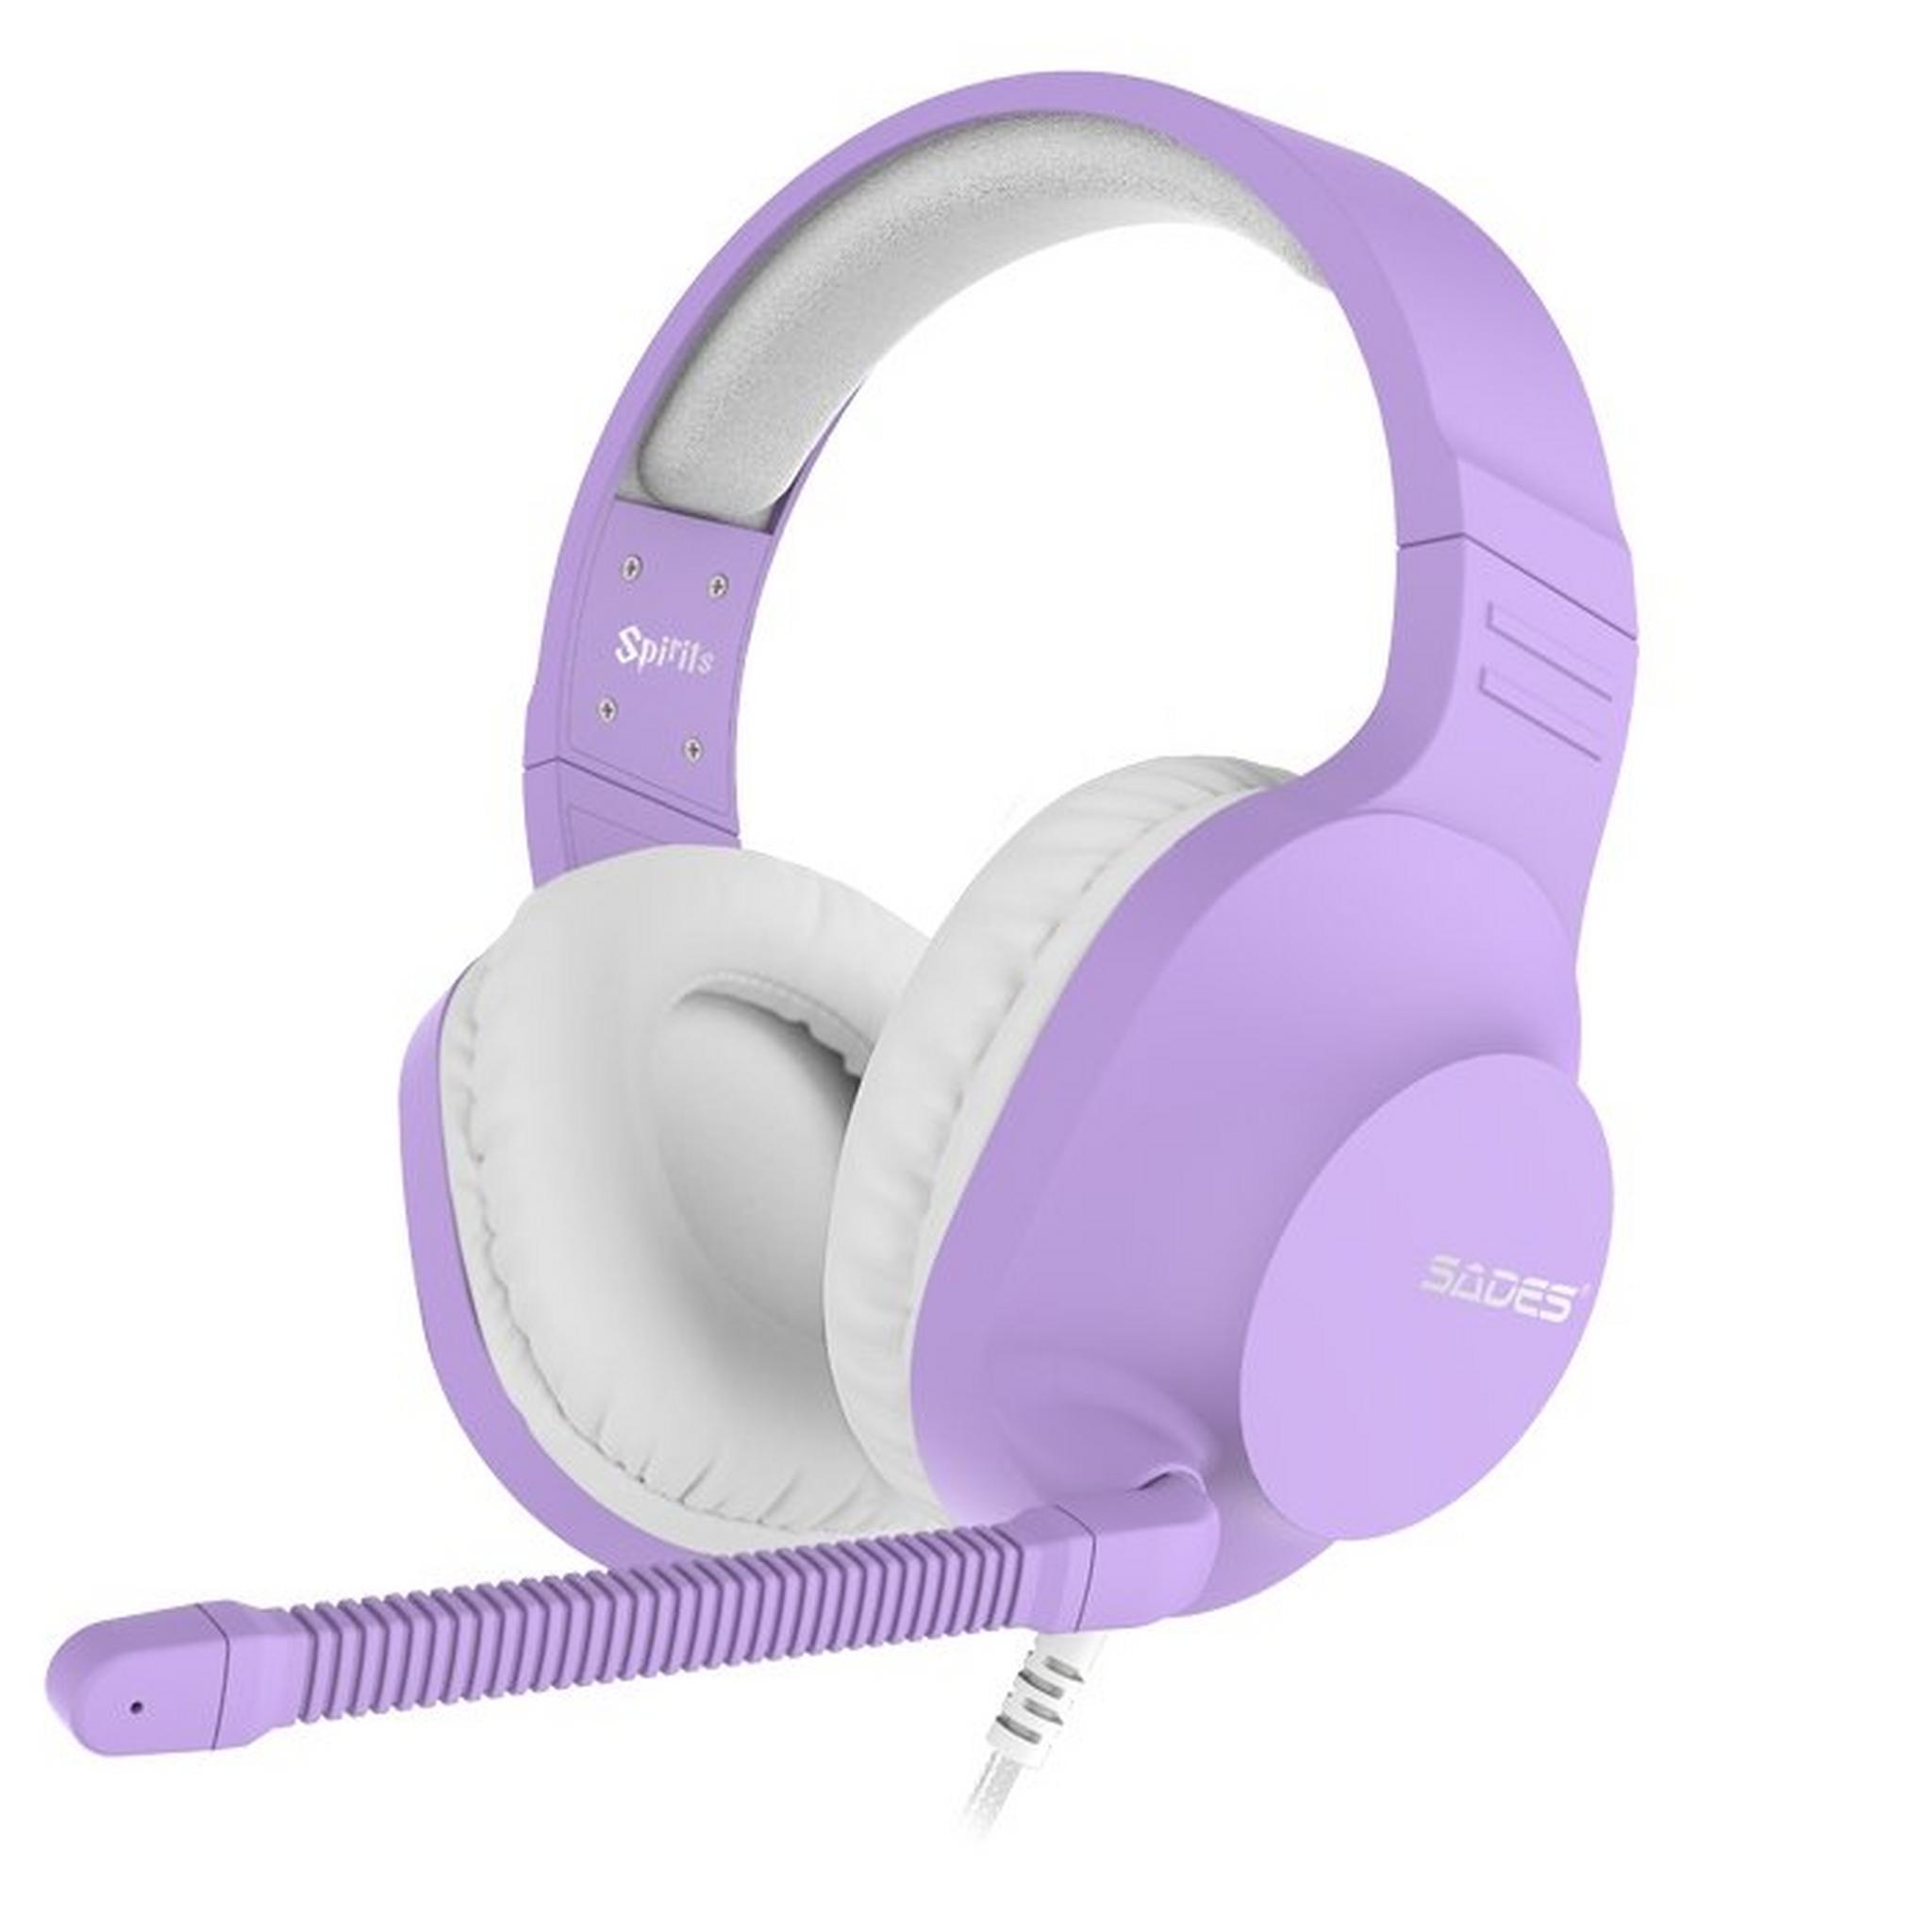 Sades Spirits SA721 Gaming Headset - Purple